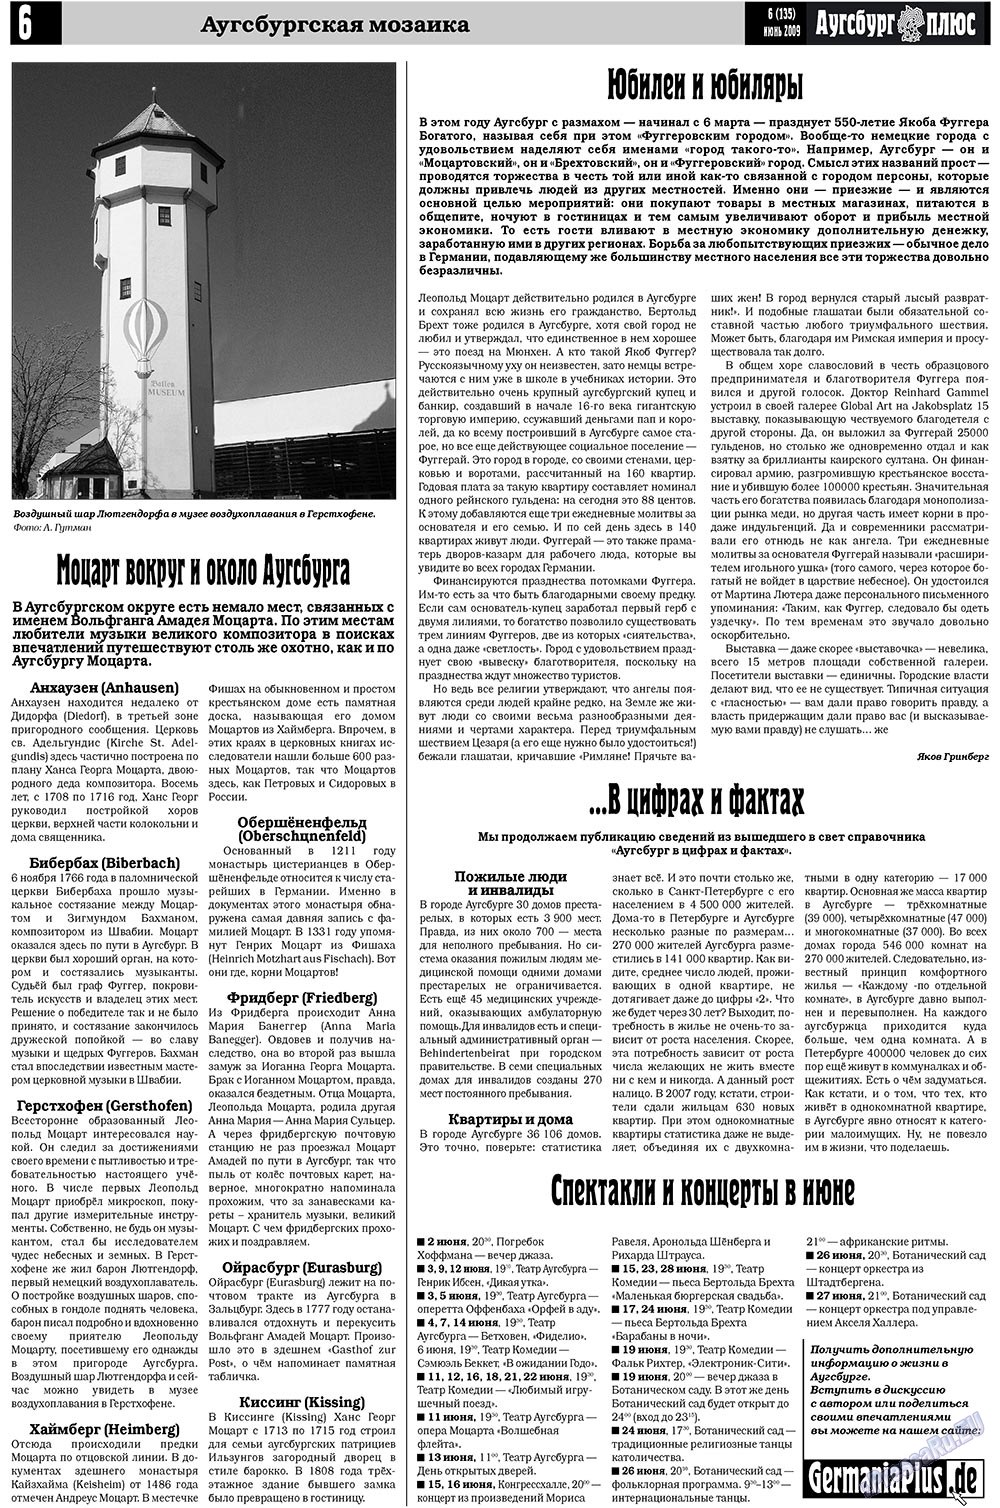 Германия плюс (газета). 2009 год, номер 6, стр. 8